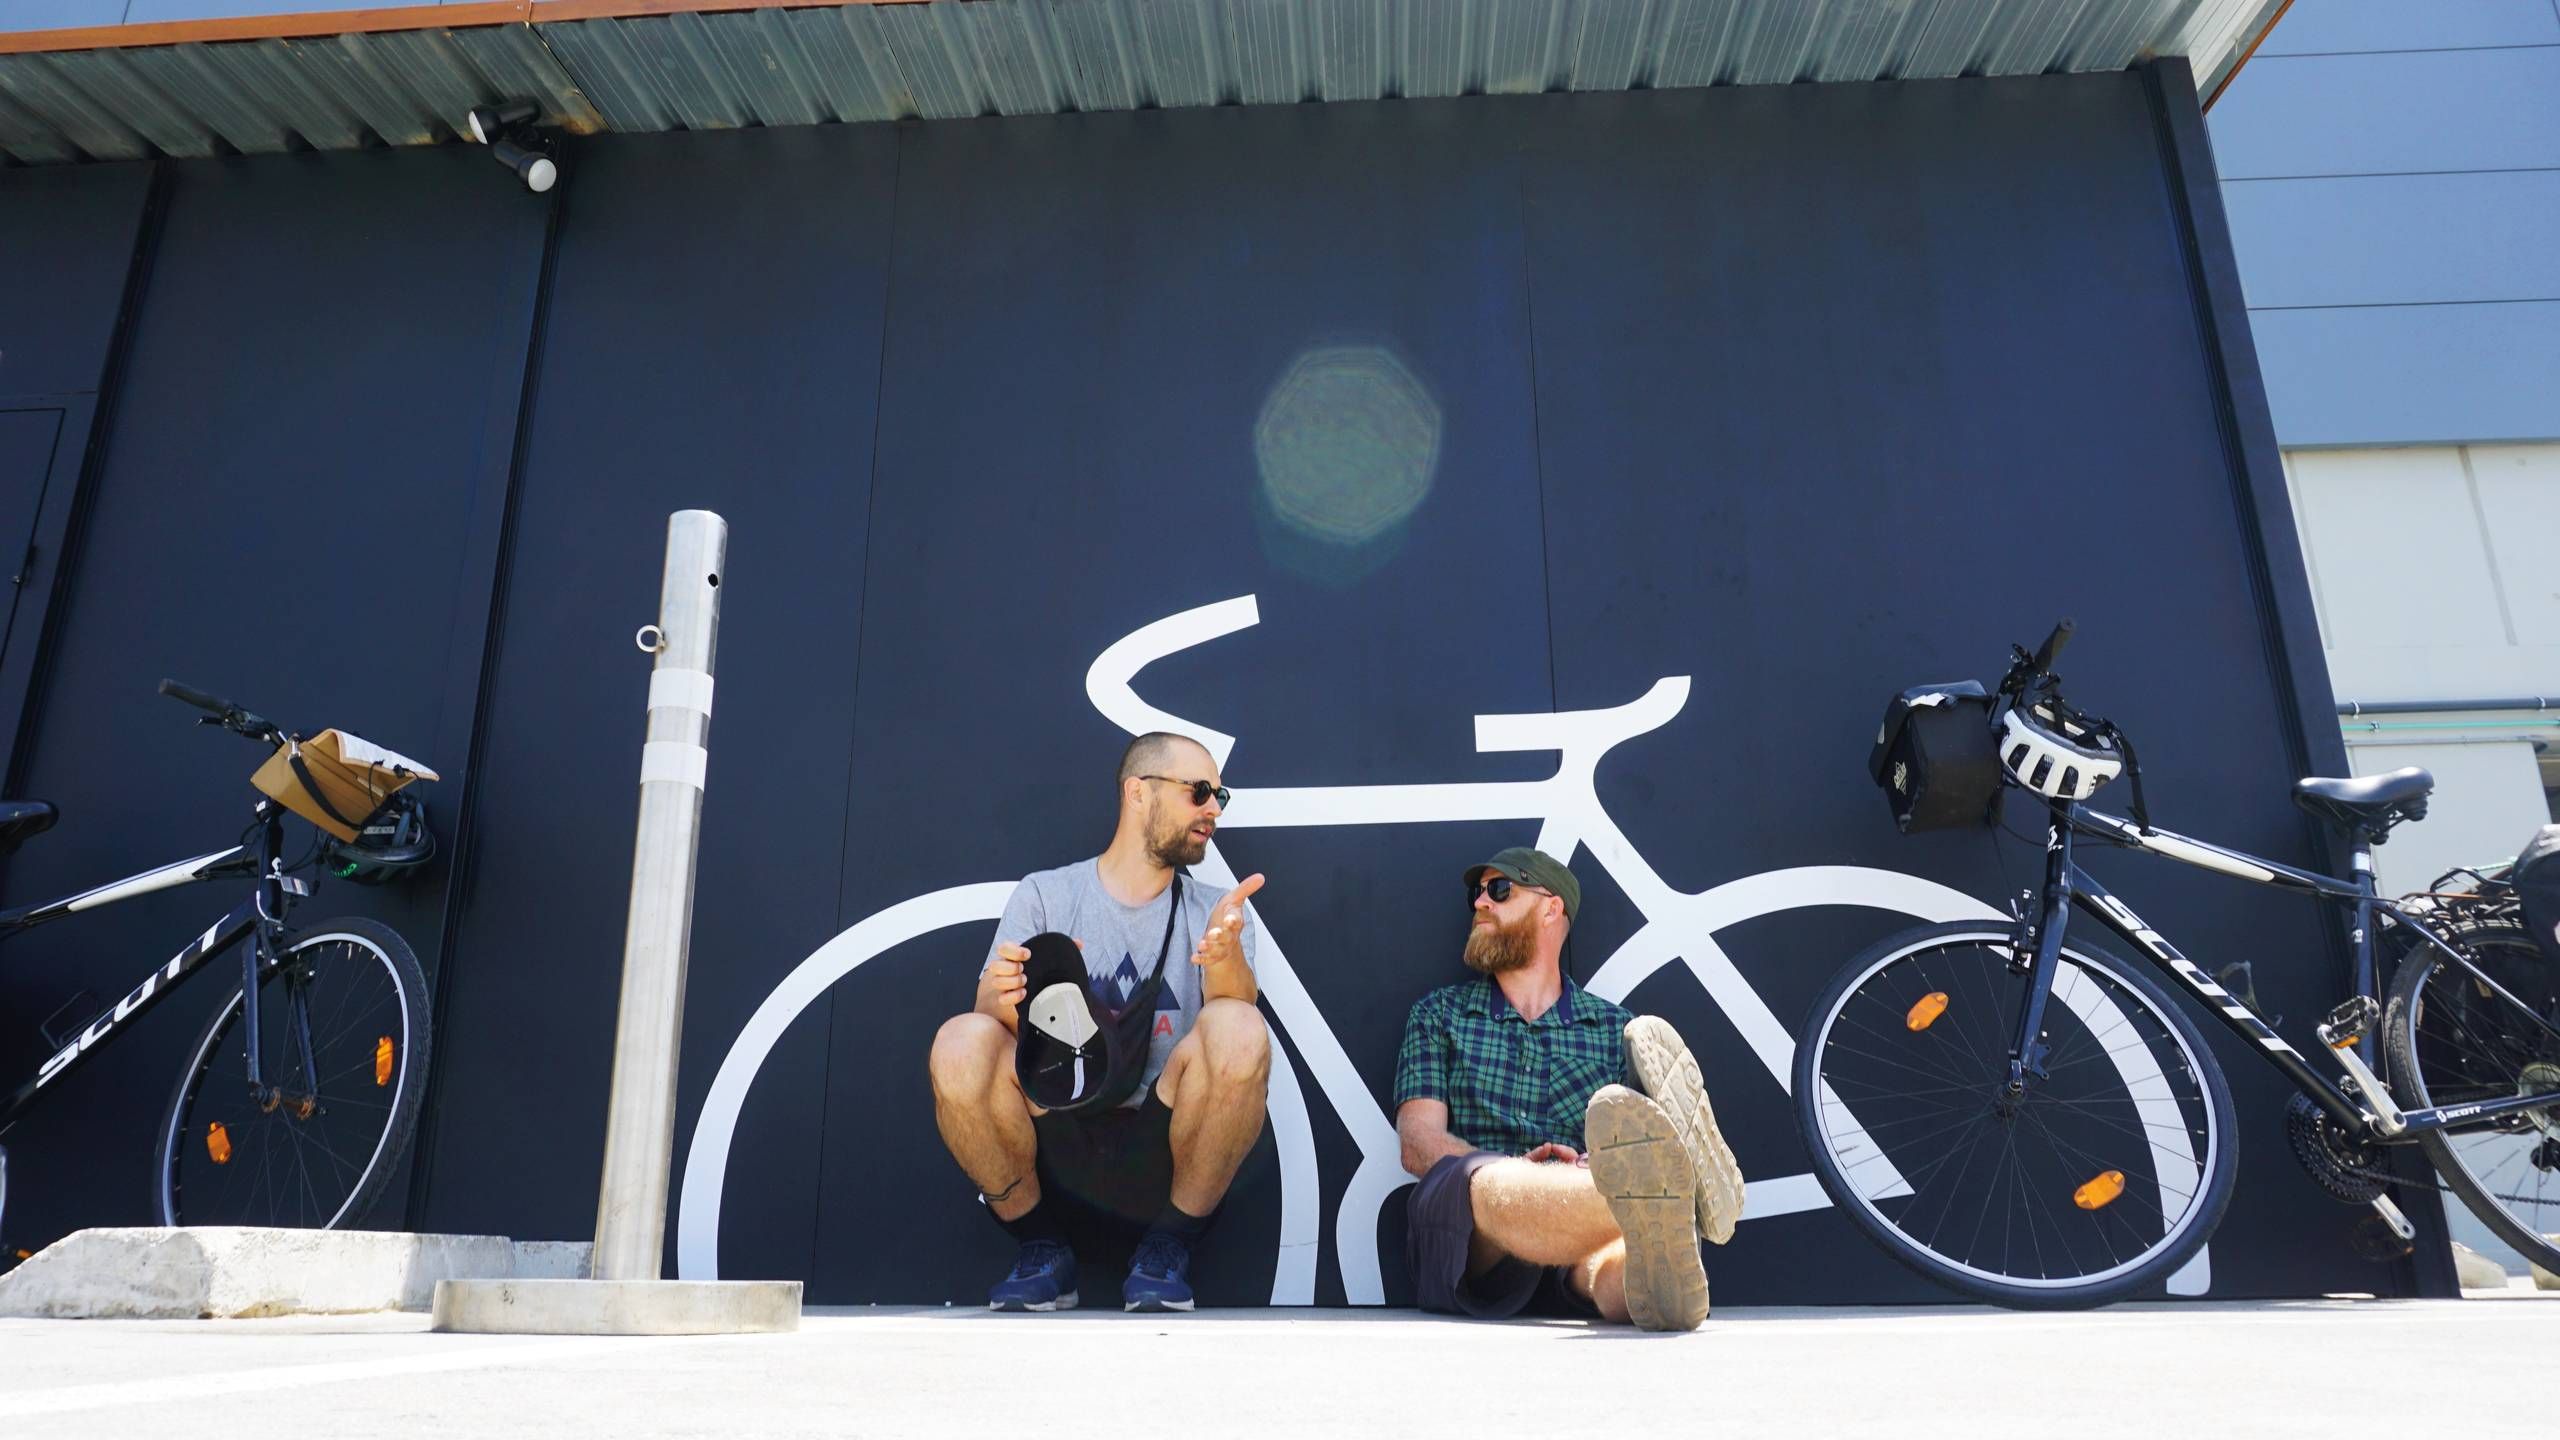 Eventyrere om at udforske verdens på cykel: »Vi er enige de gode historier skal